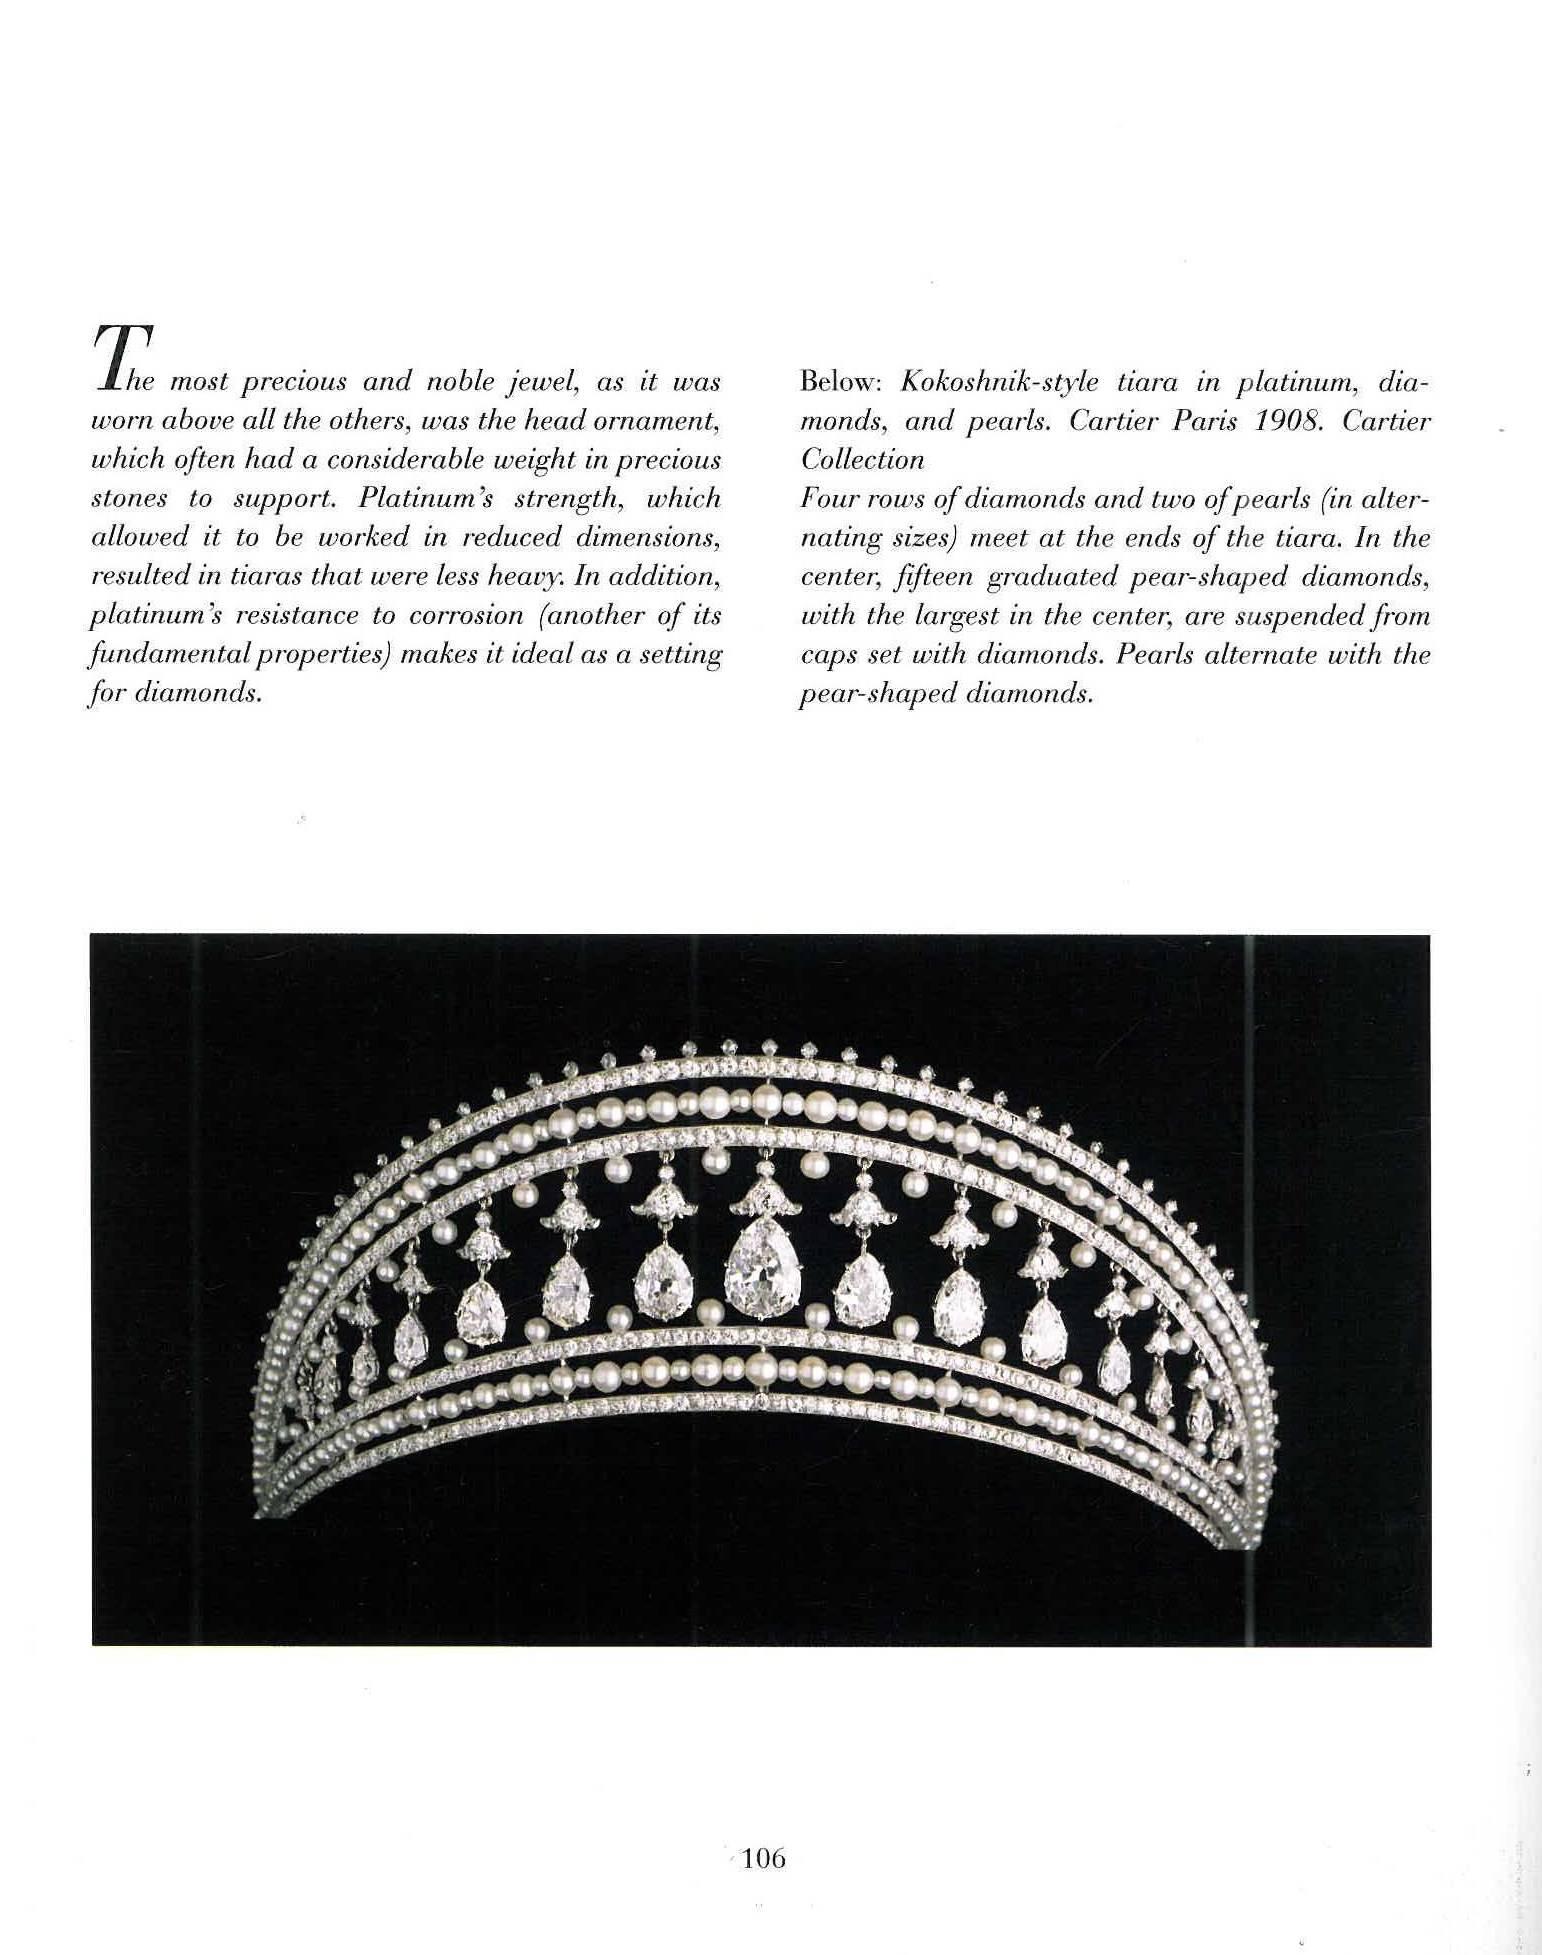 Ce livre magnifiquement photographié et illustré est la première étude de l'œuvre de Cartier en platine. Le platine est connu pour son allure incomparable et la façon dont il met en valeur les diamants, le livre présente des centaines de bijoux